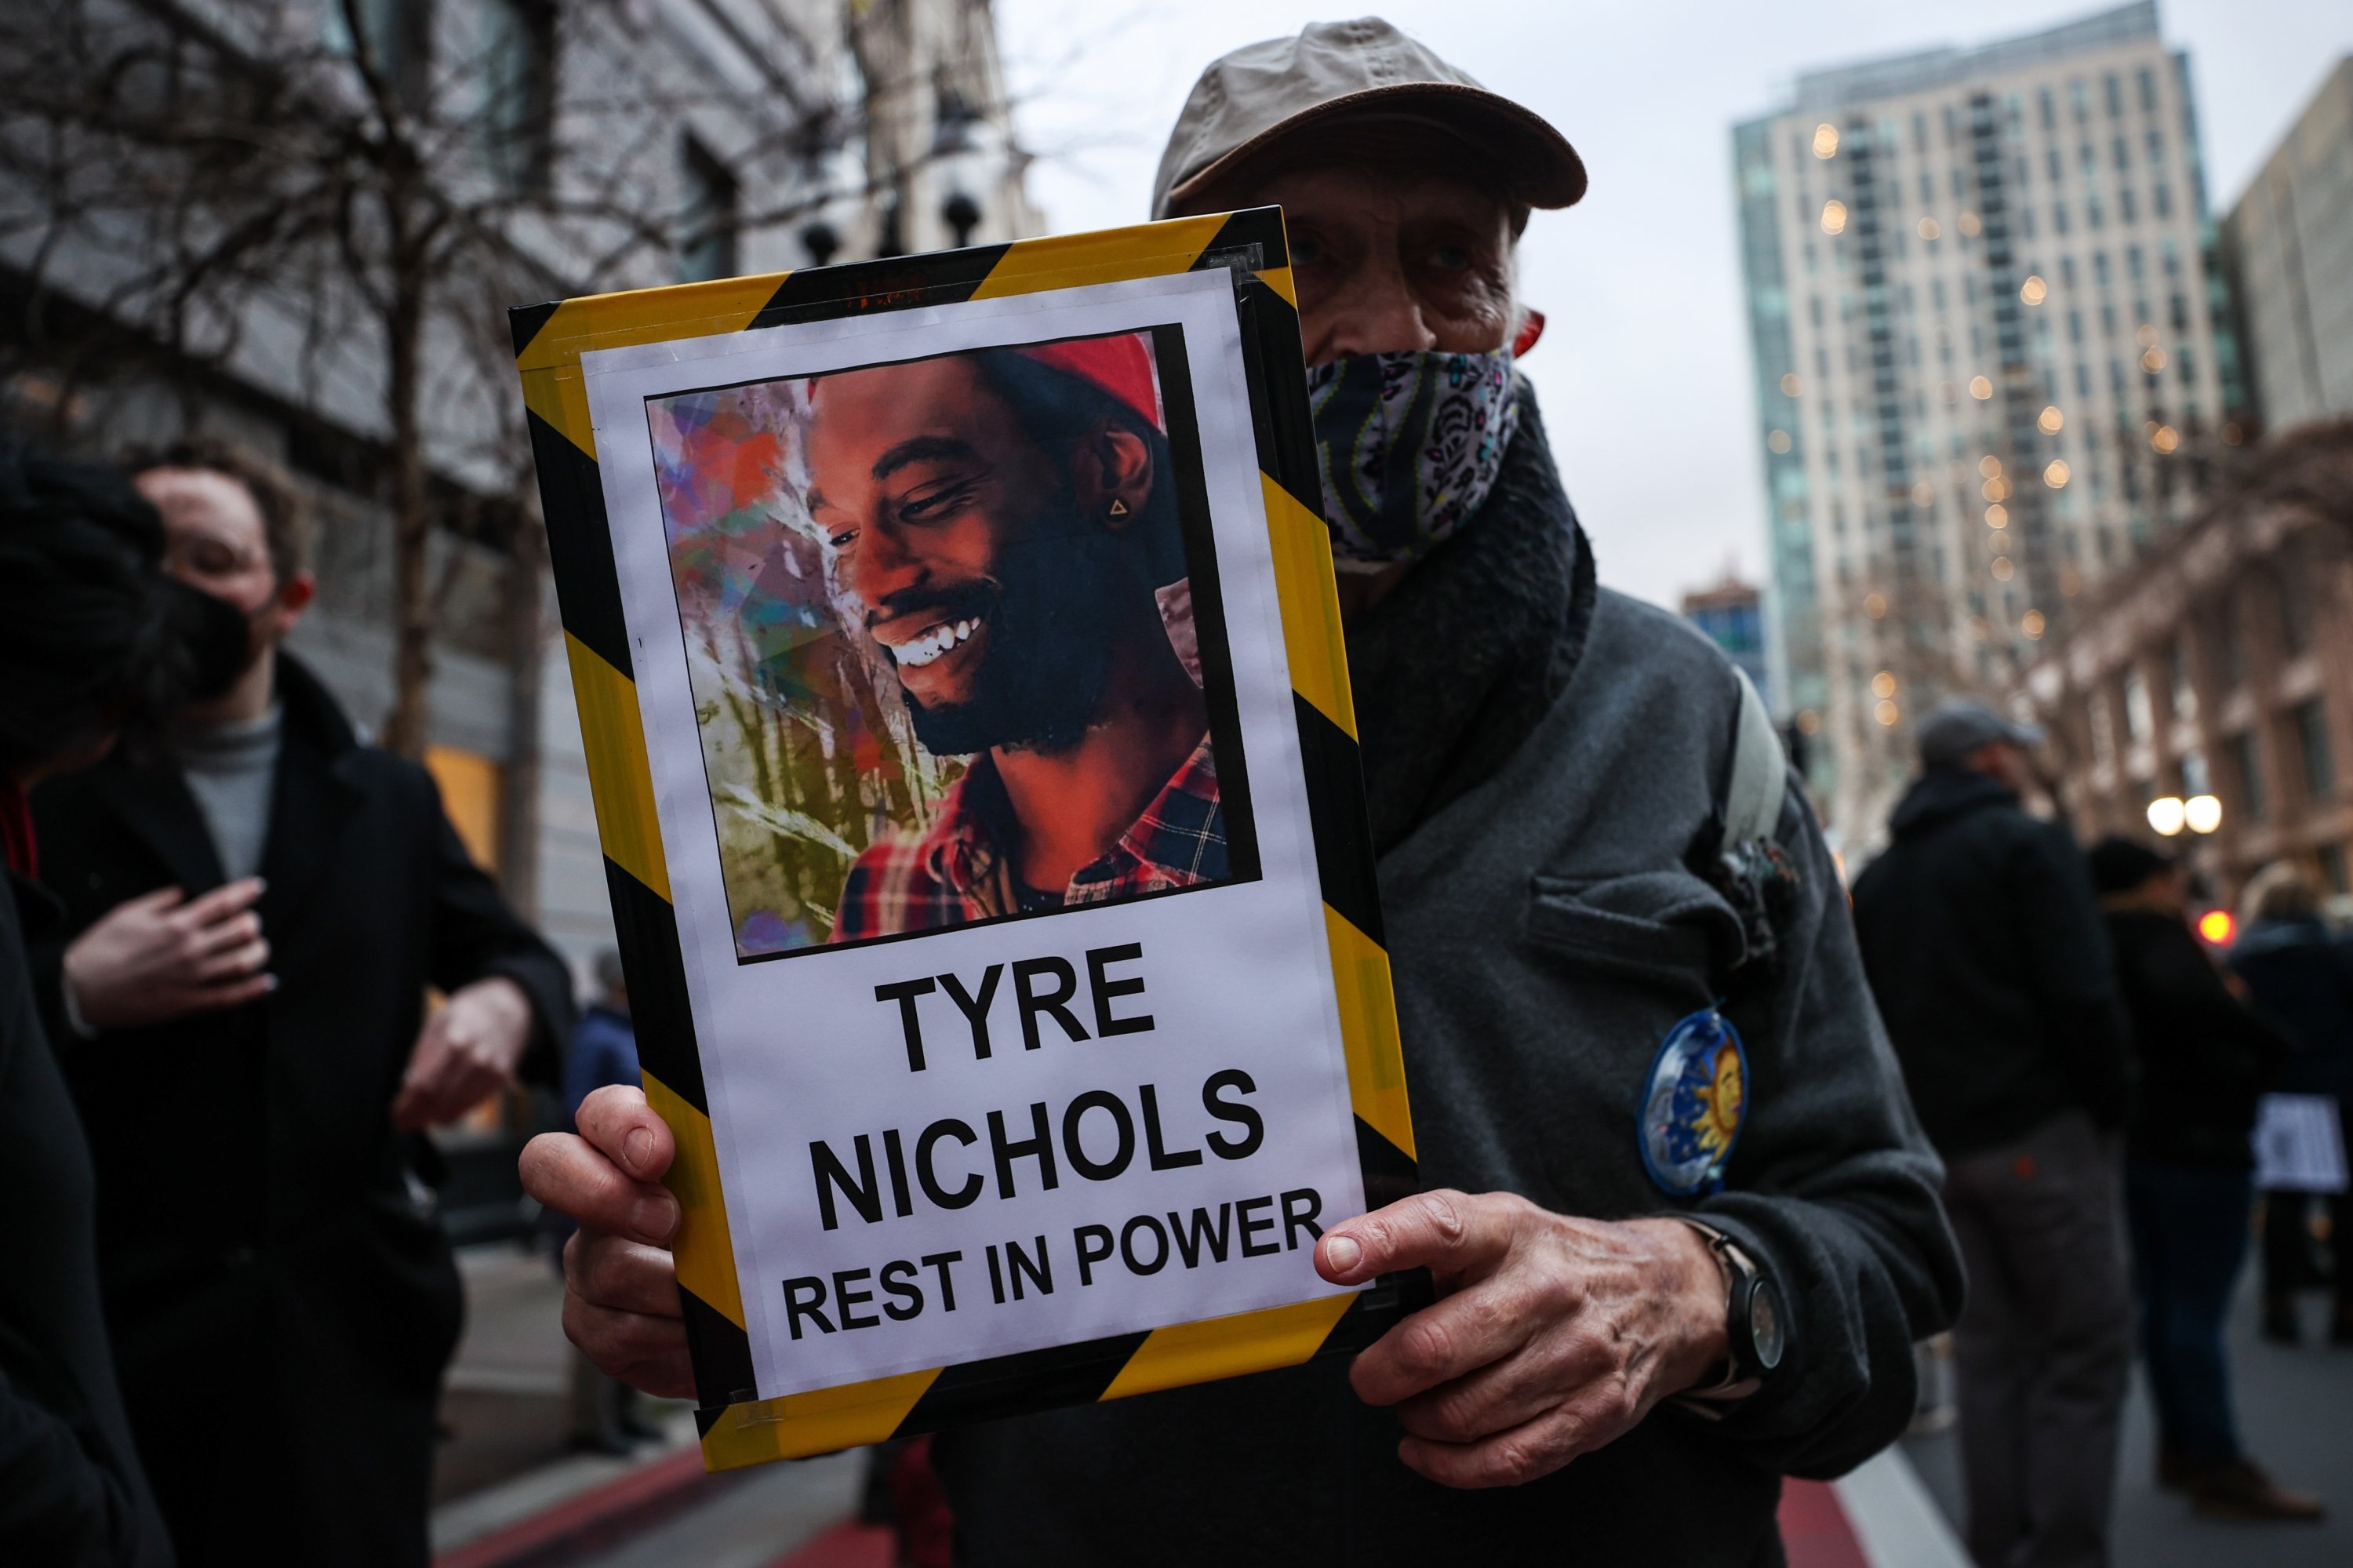 Para pengunjuk rasa berkumpul saat unjuk rasa menentang serangan fatal polisi terhadap Tire Nichols, di Oakland, California, AS, 27 Januari 2023. (Foto AA)